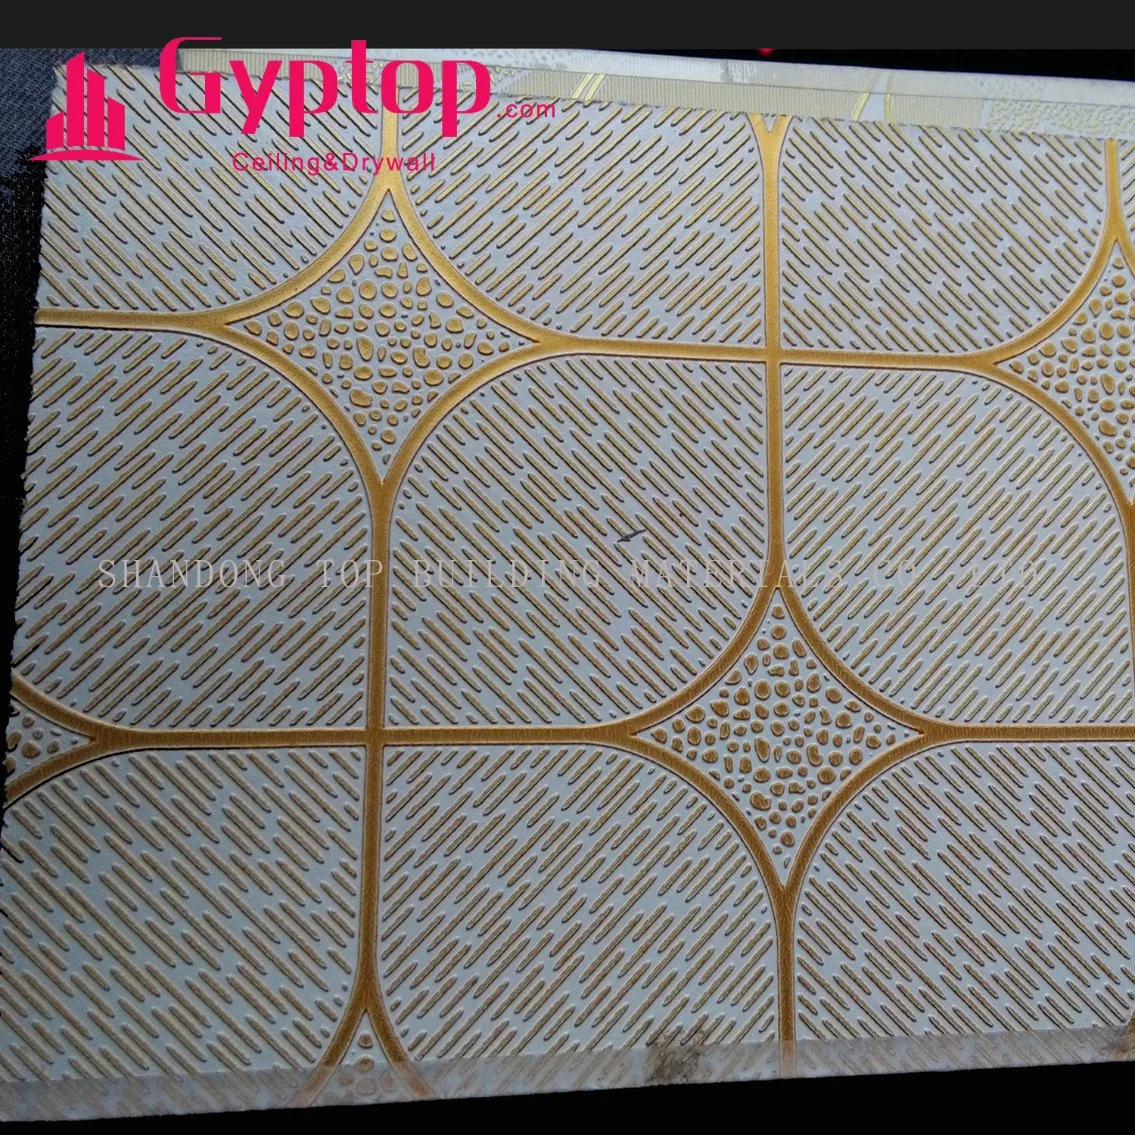 PVC Facing Gypsum Ceiling with Aluminum/ 2 X2 Vinyl Gypsum Ceiling Tiles